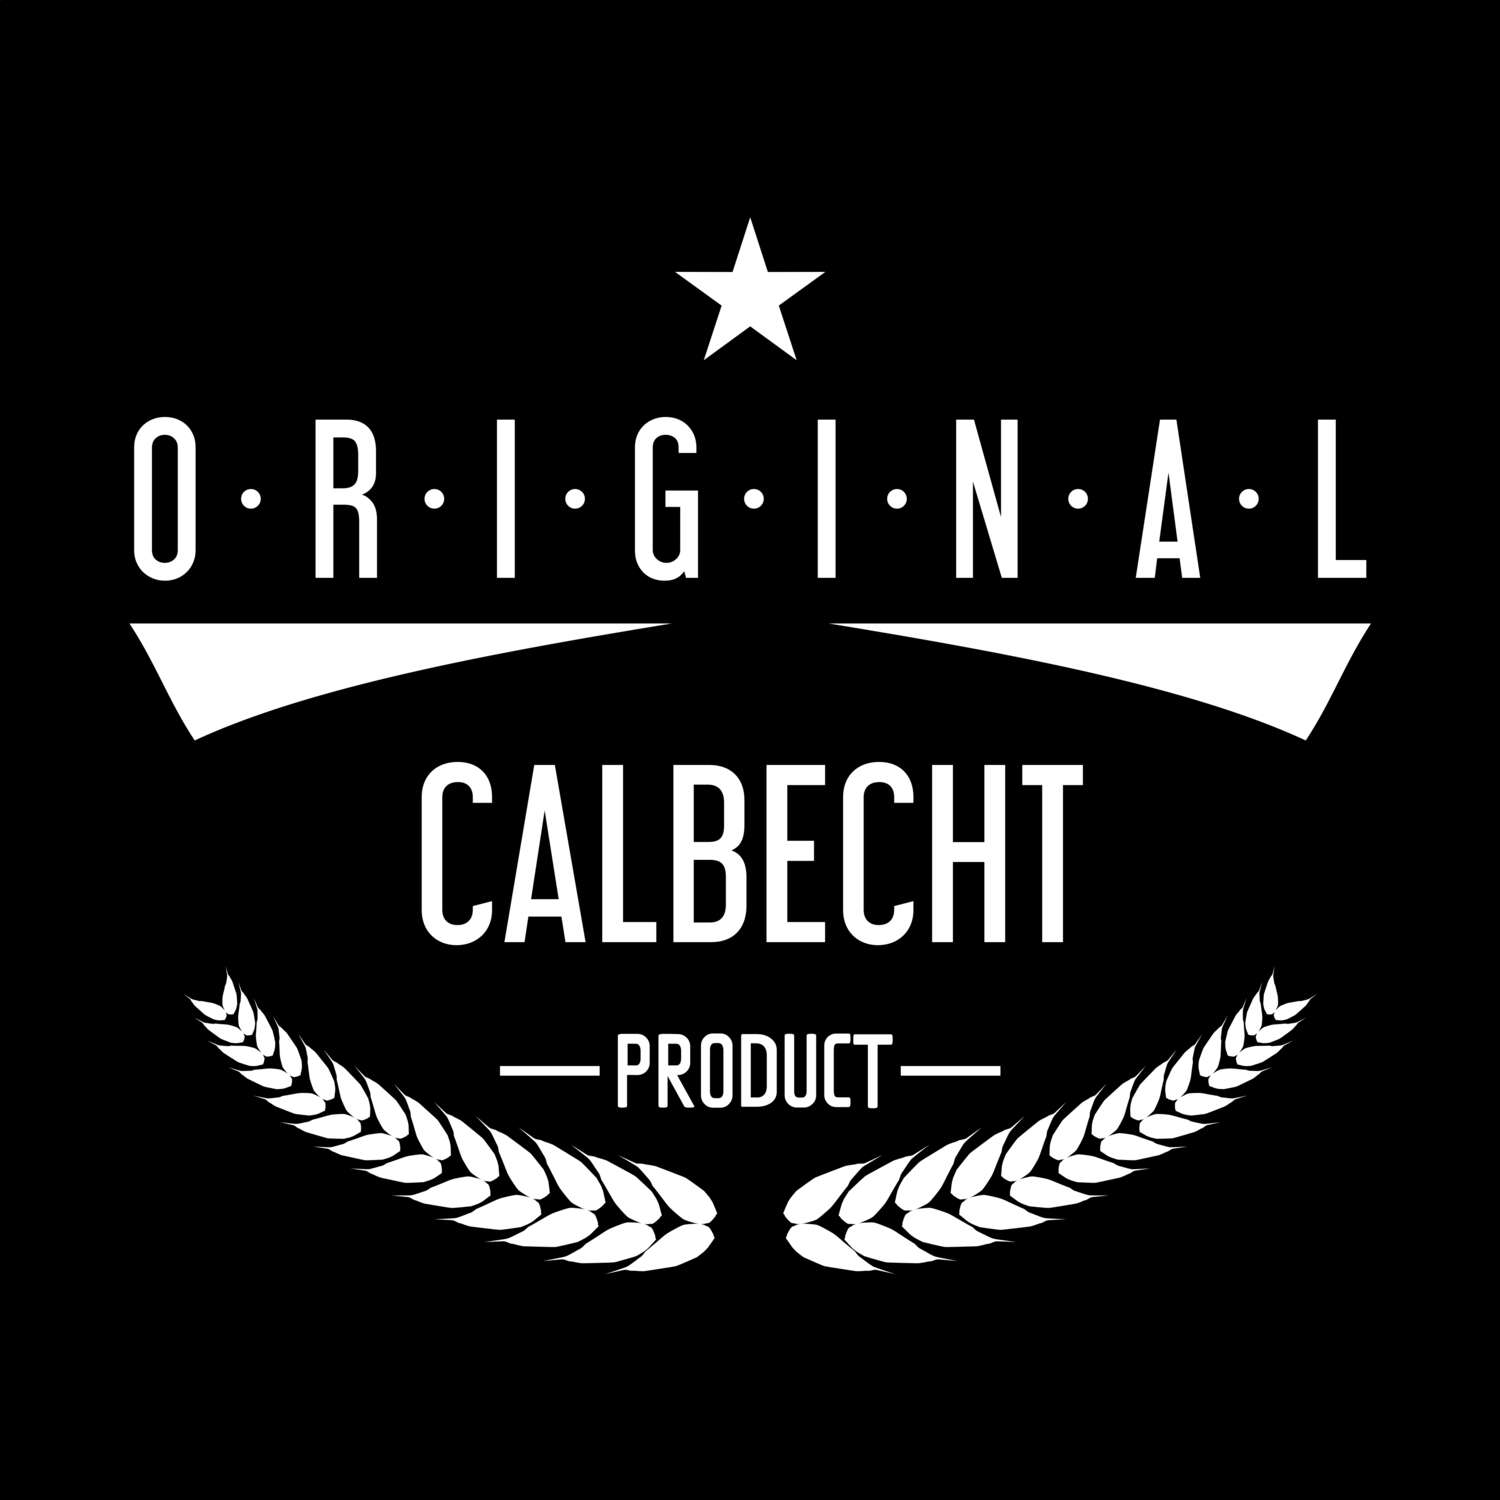 Calbecht T-Shirt »Original Product«